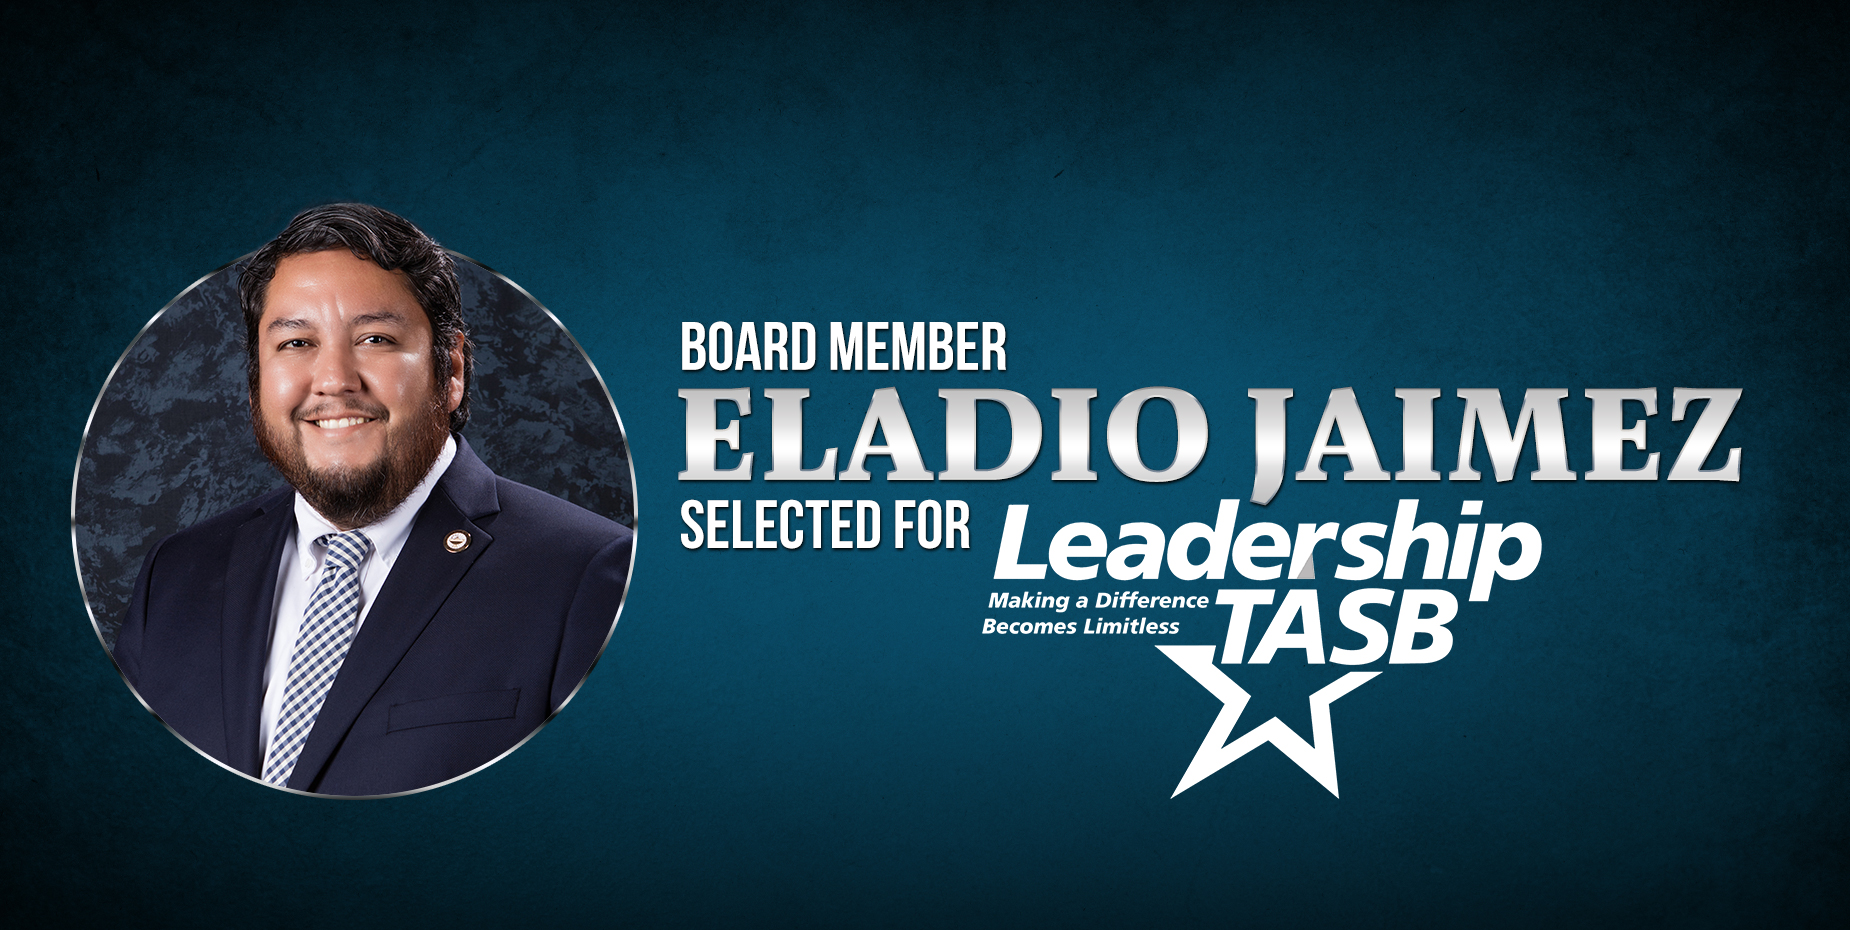 Eladio Jaimez, miembro de la Mesa Directiva, es seleccionado como uno de los líderes de TASB.